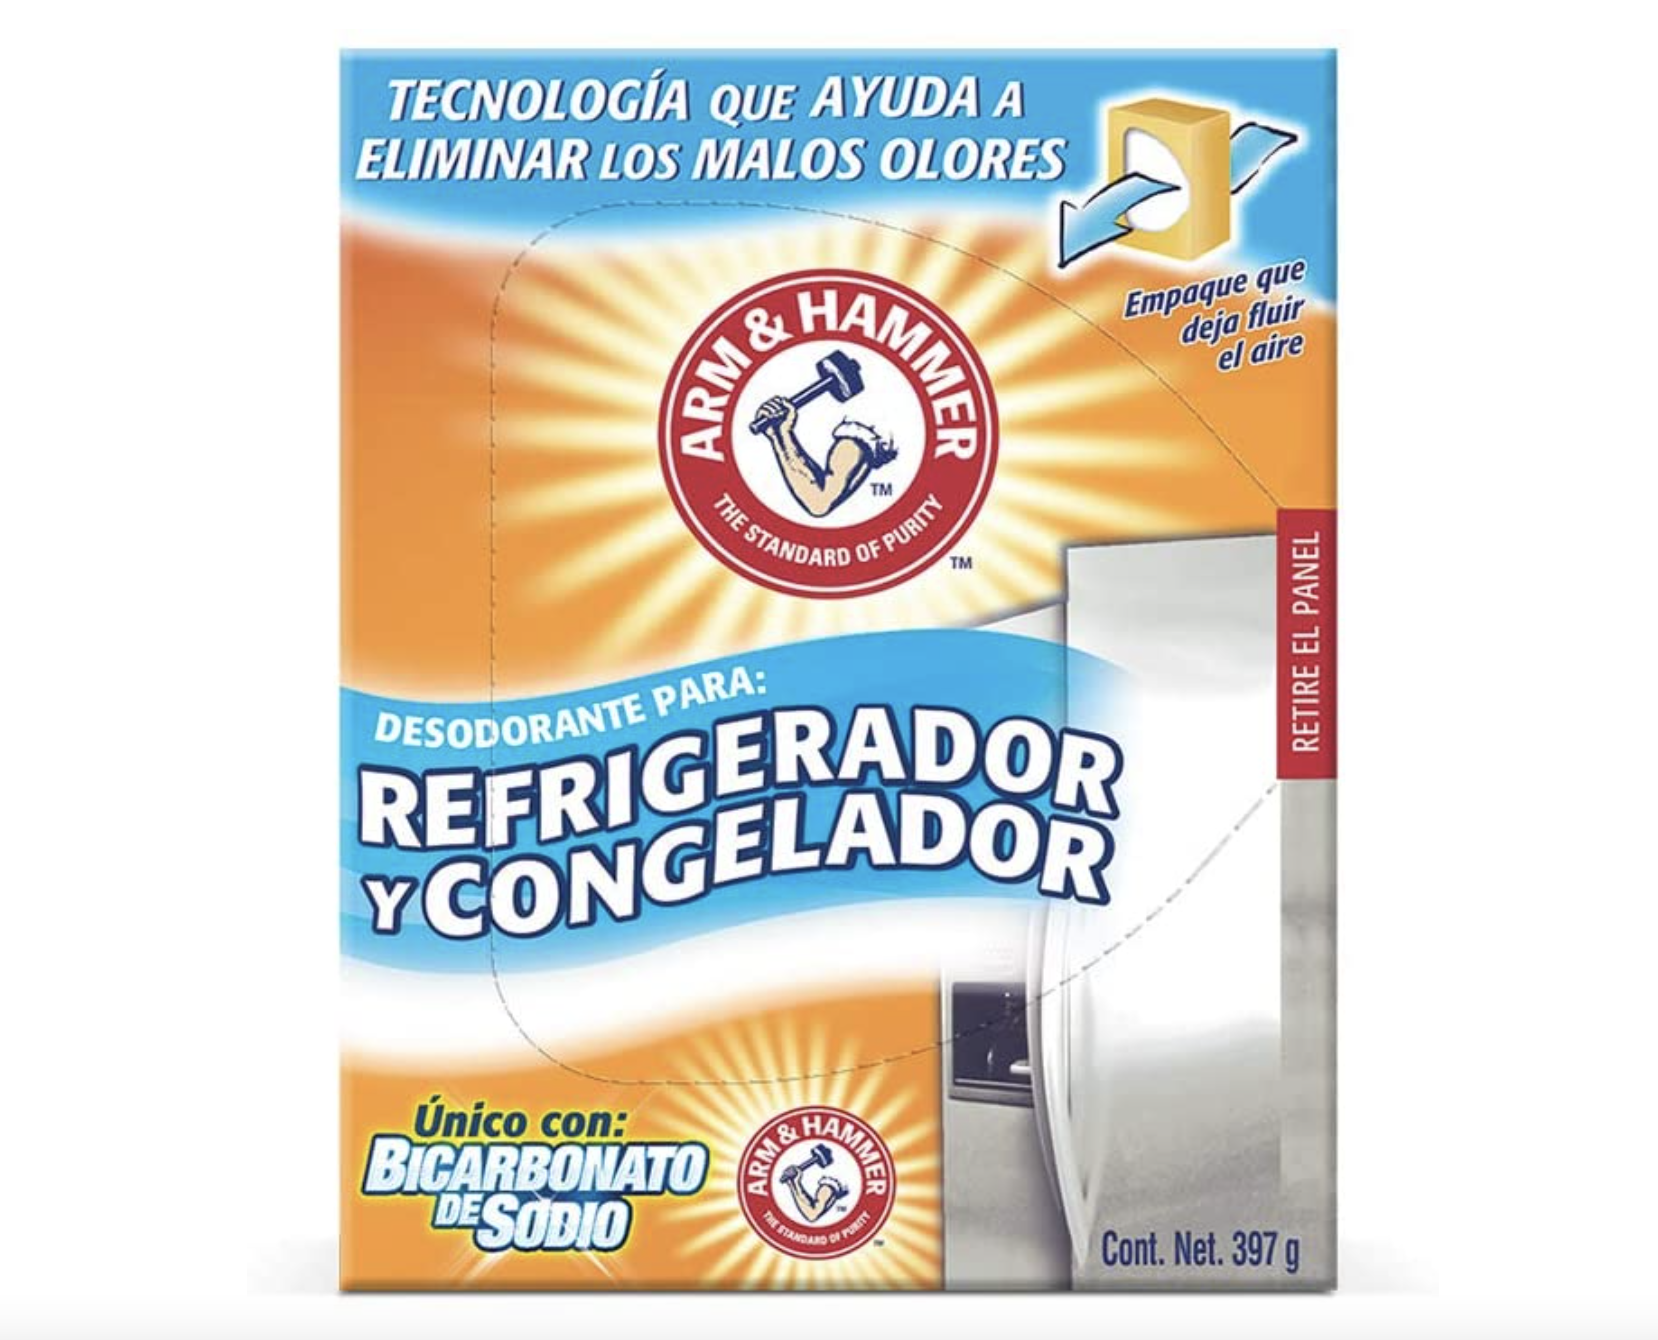 Desodorante para refrigerador y congelador